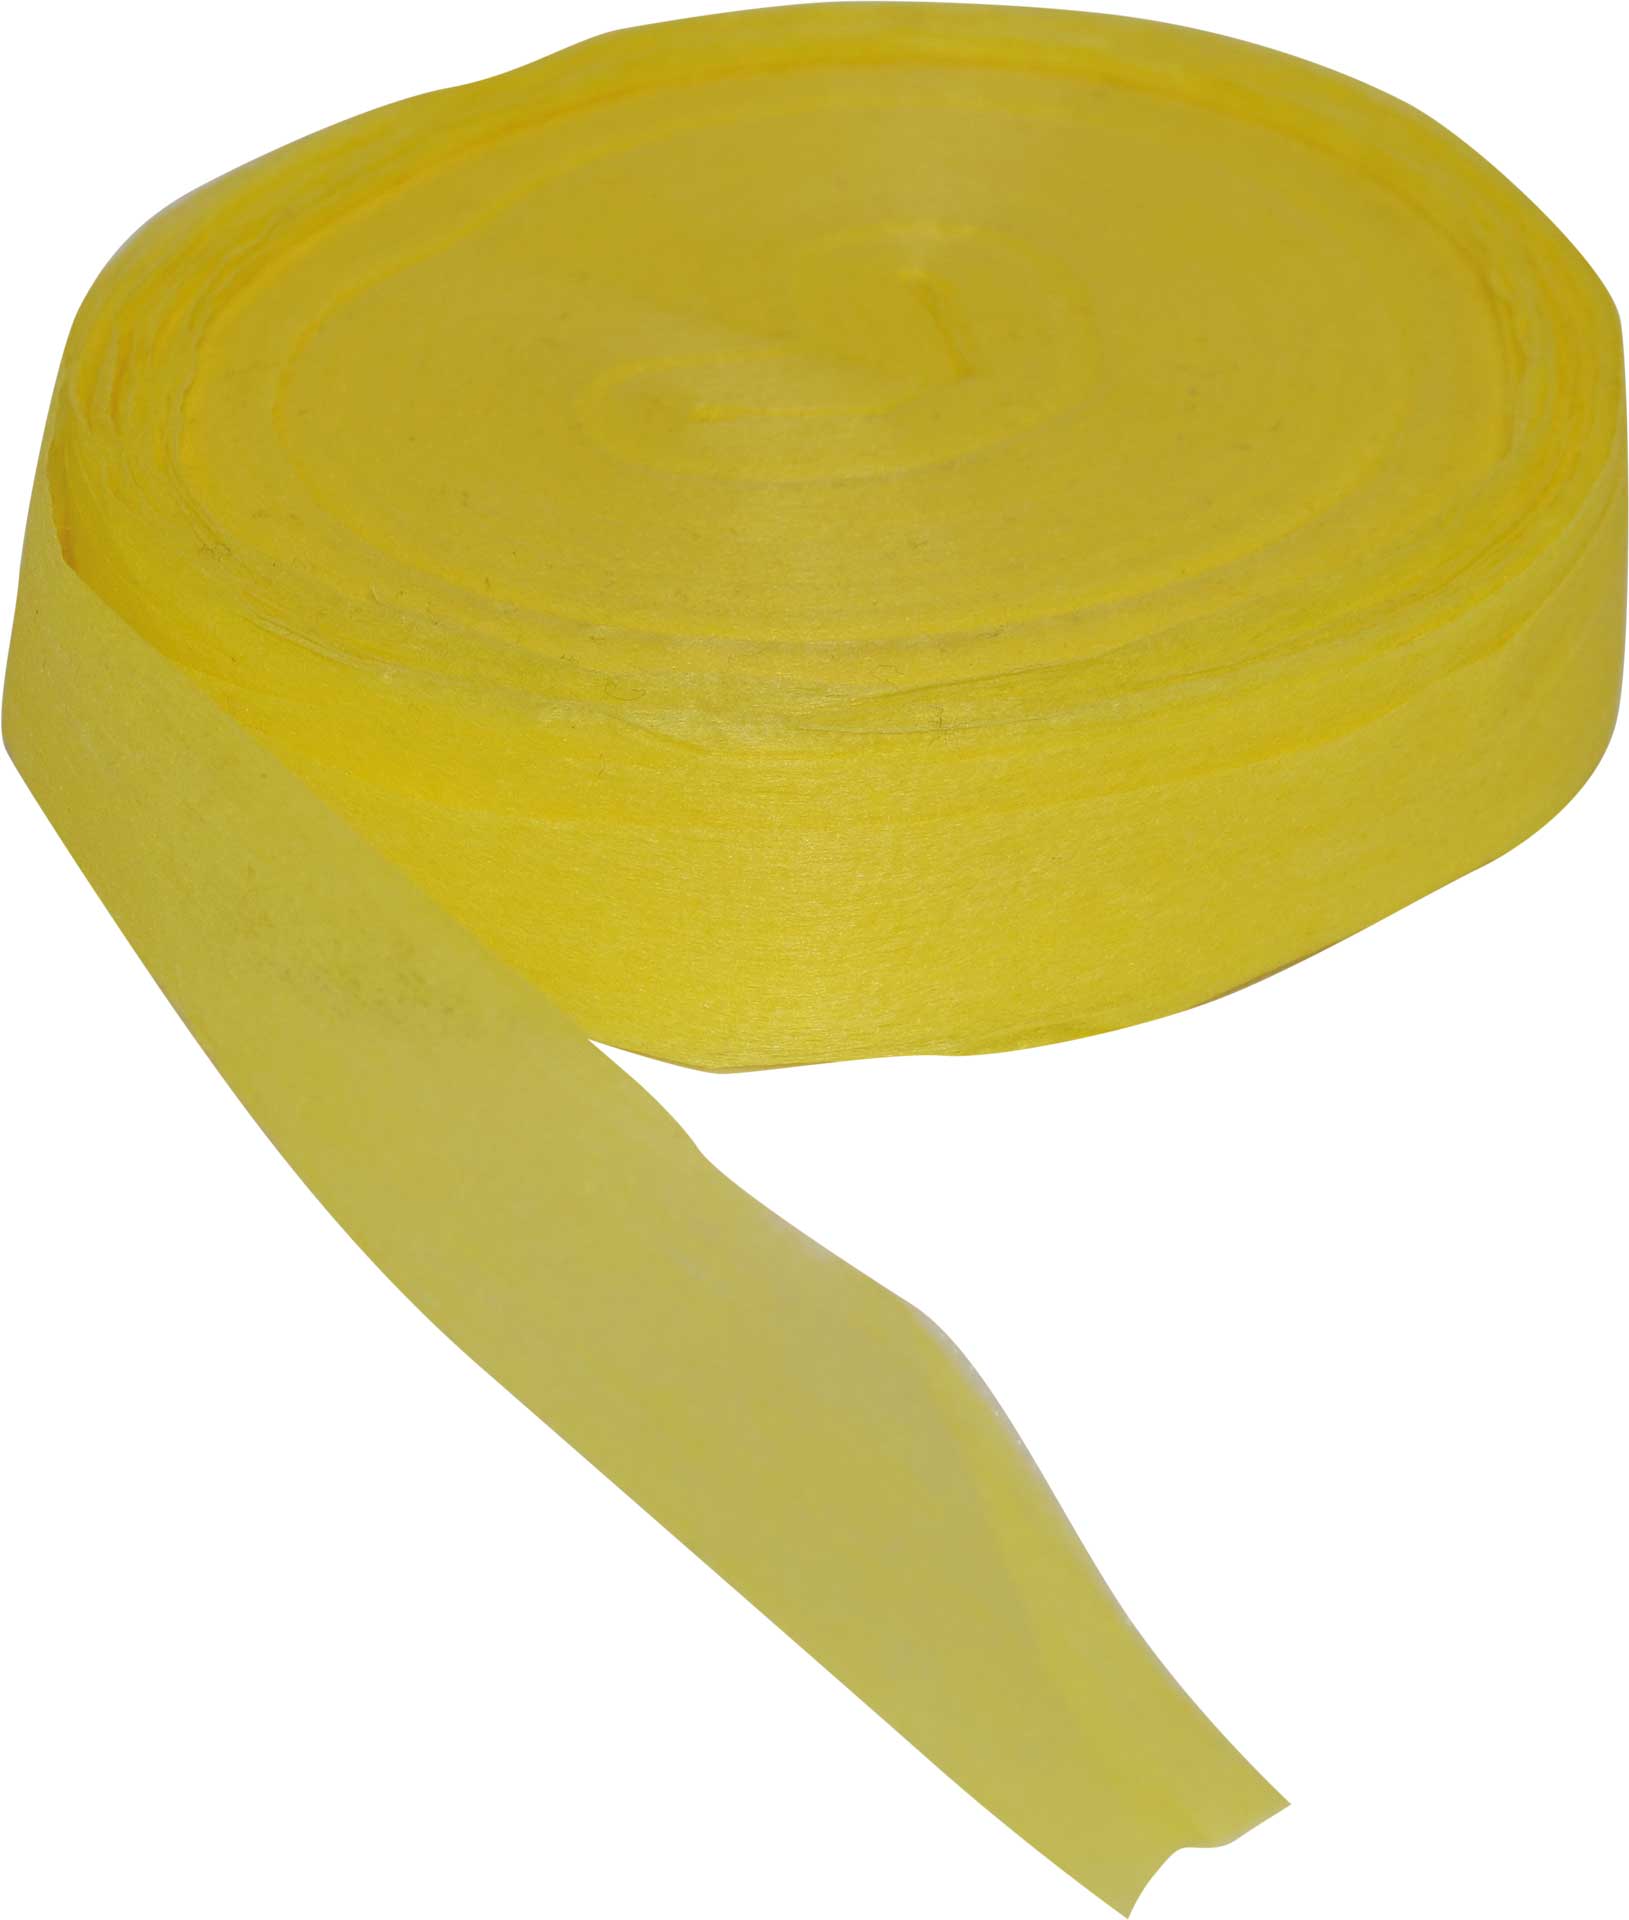 Robbe Modellsport Rubans pour Wingo 2 dans les couleurs jaune env. 75m